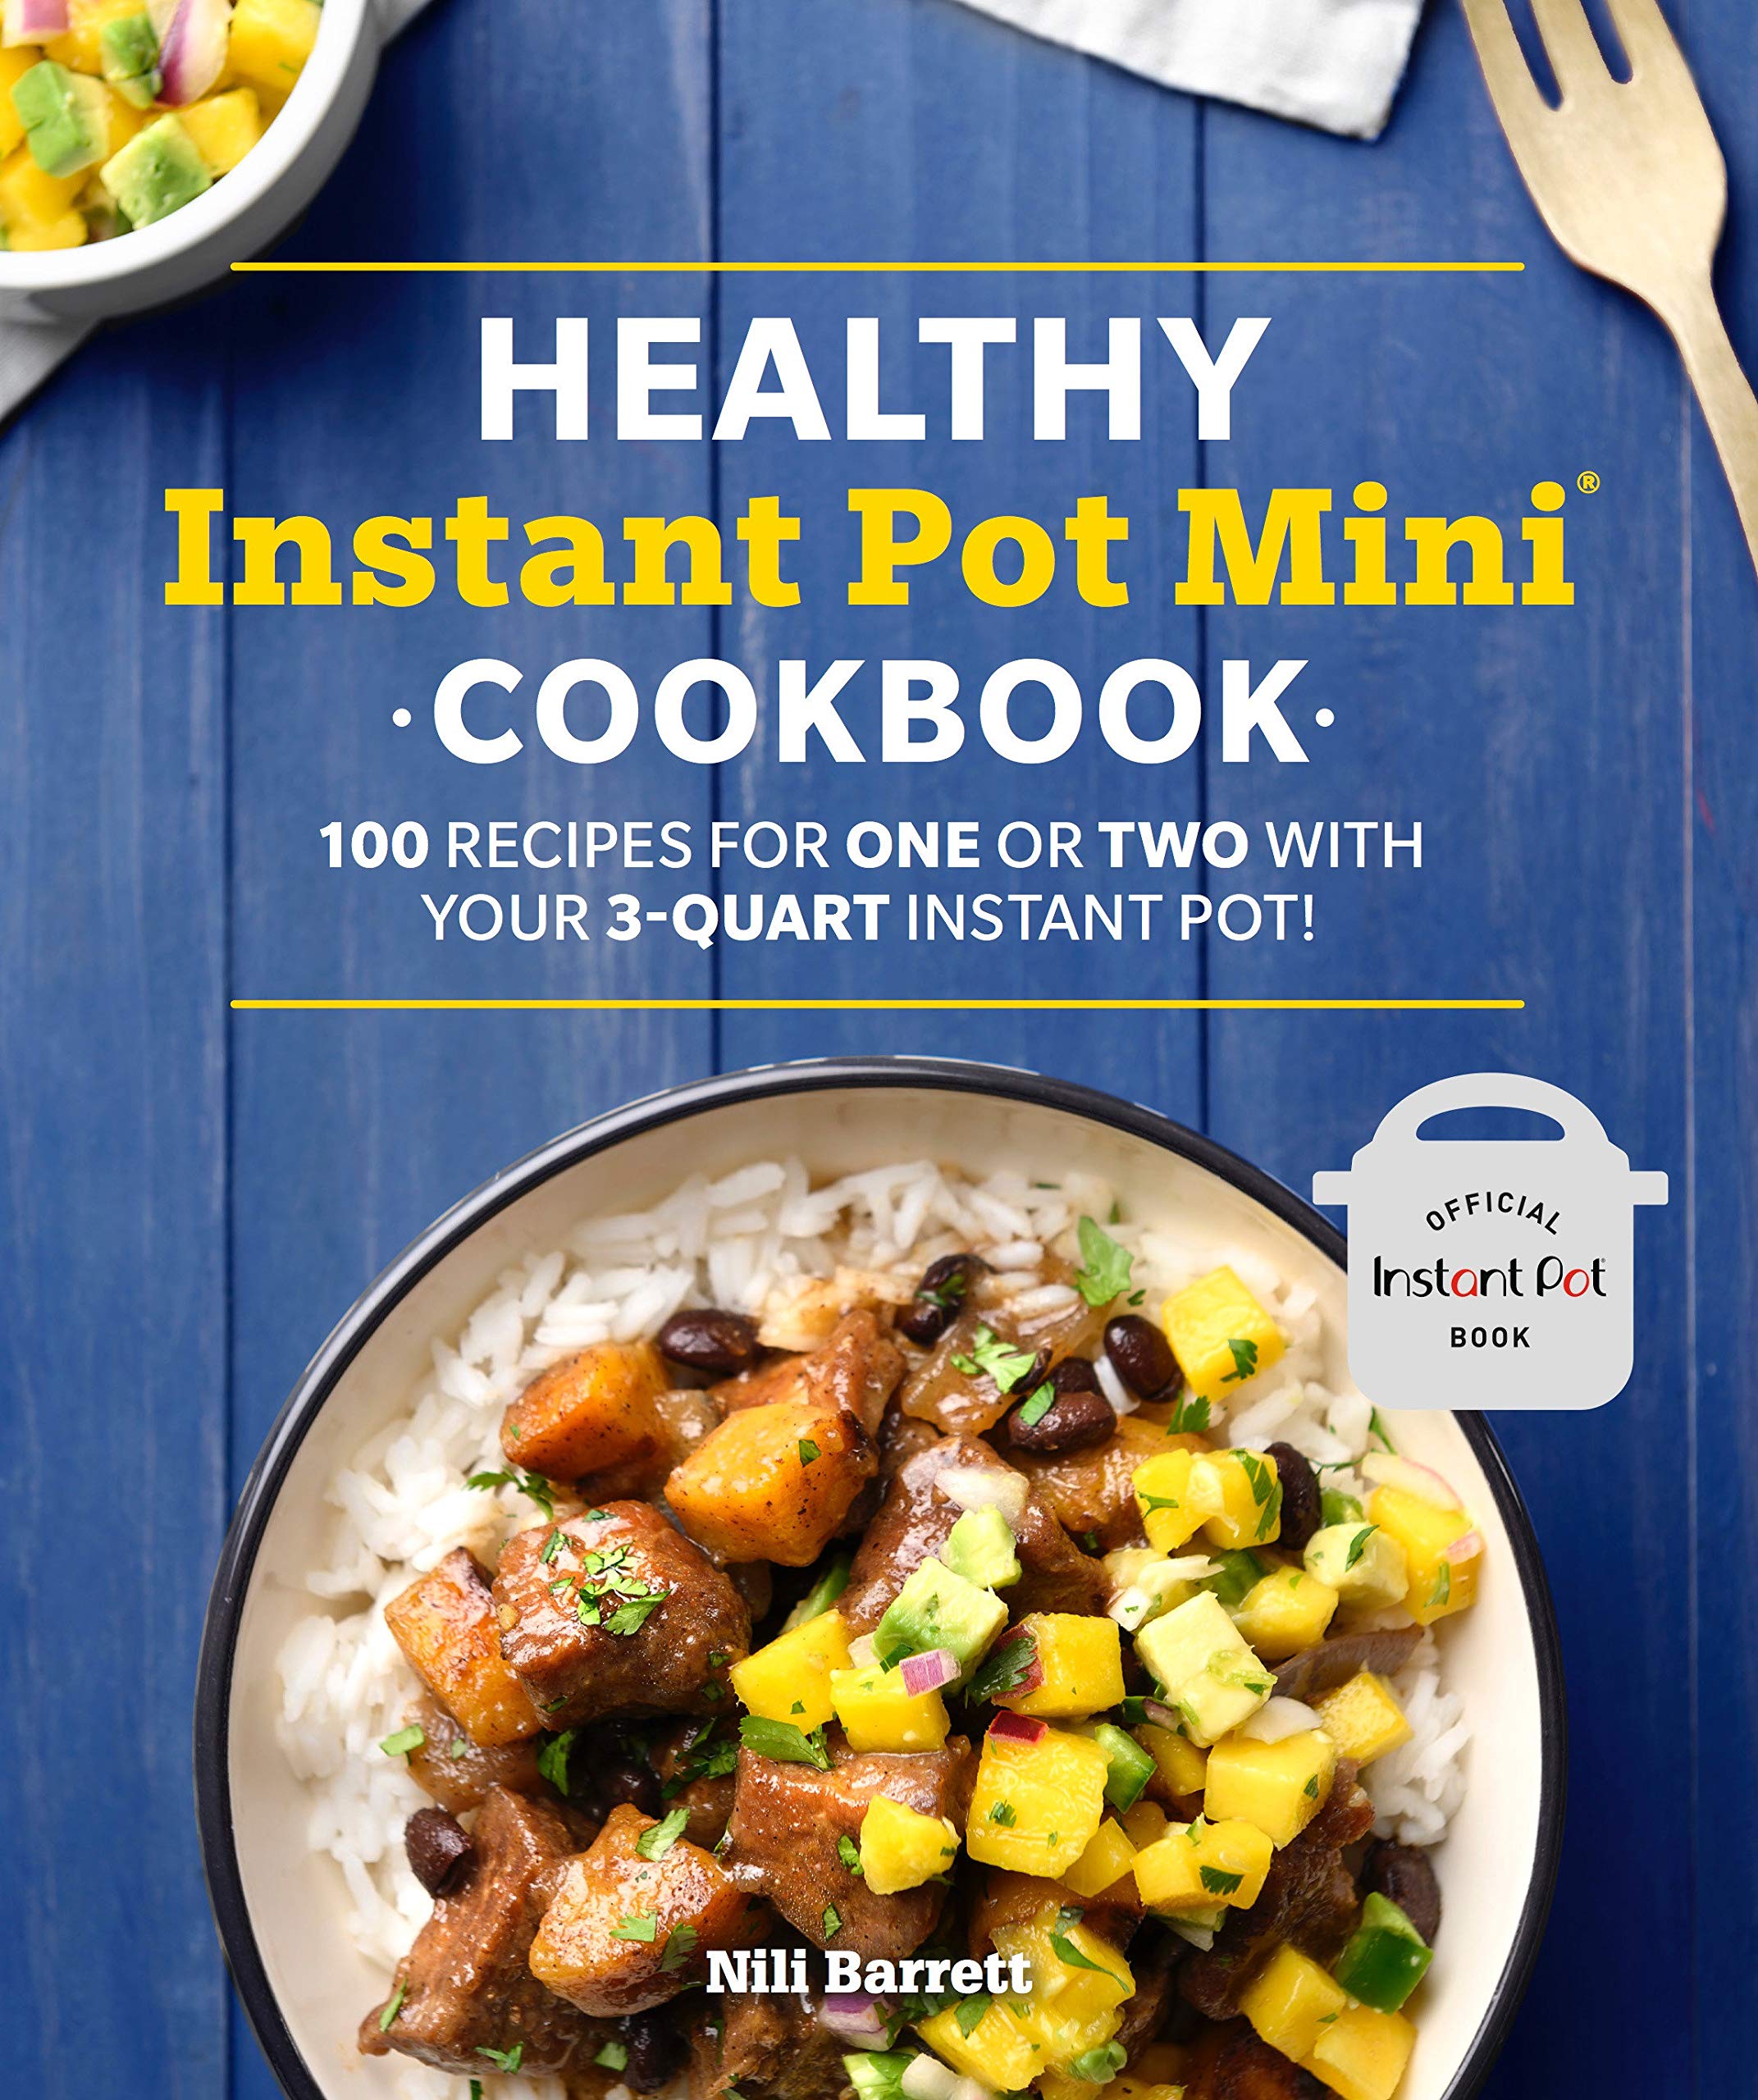 Cookbook Preview Healthy Instant Pot Mini Cookbook Cookbook Divas